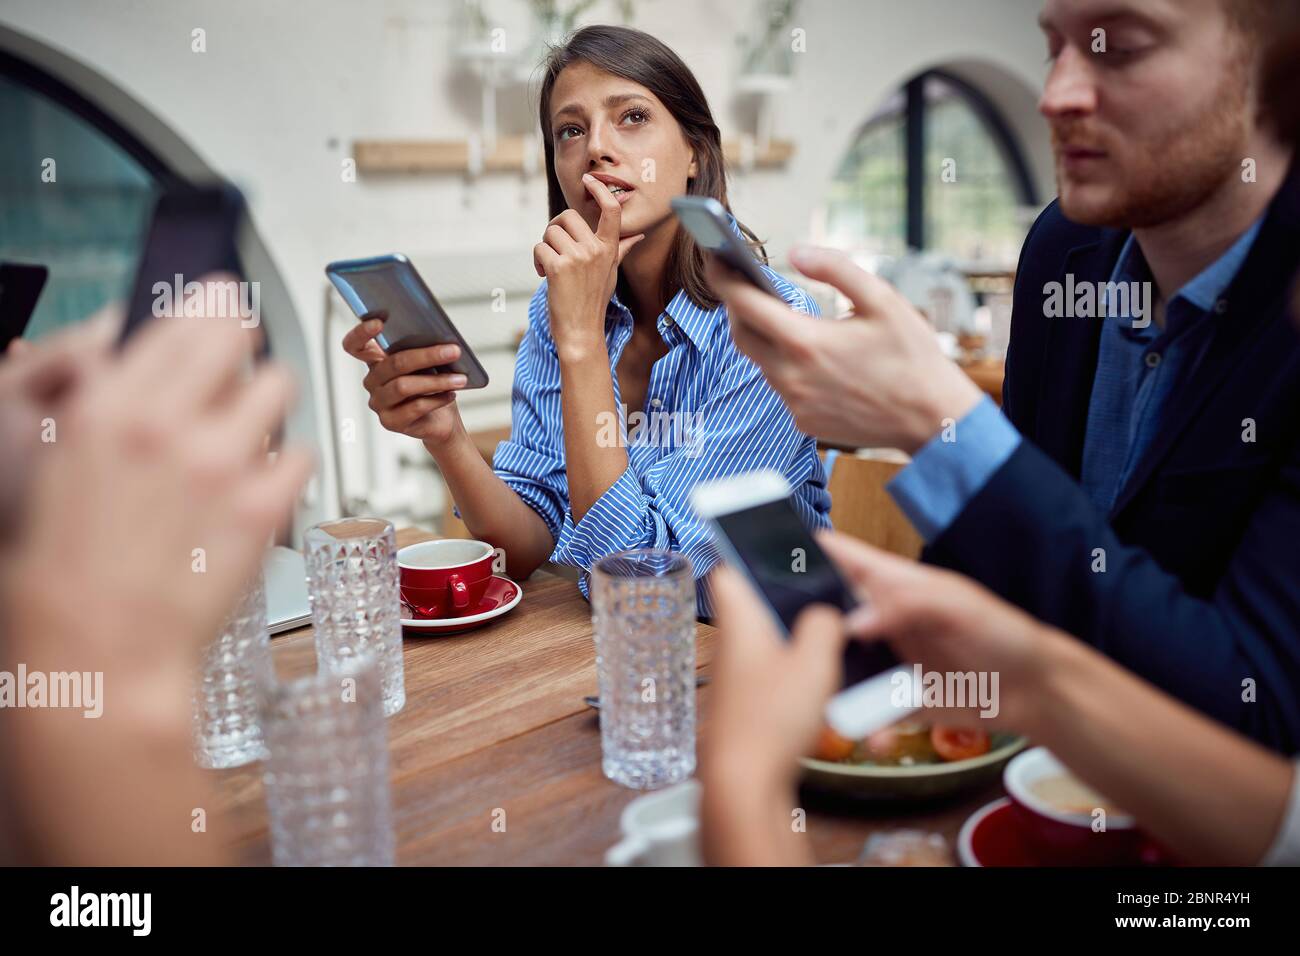 Junge kaukasische Frau fehlt in Gedanken auf unsoziale Mittagessen im Restaurant, wo jede Person mit dem Handy und nicht miteinander reden. Moderne te Stockfoto